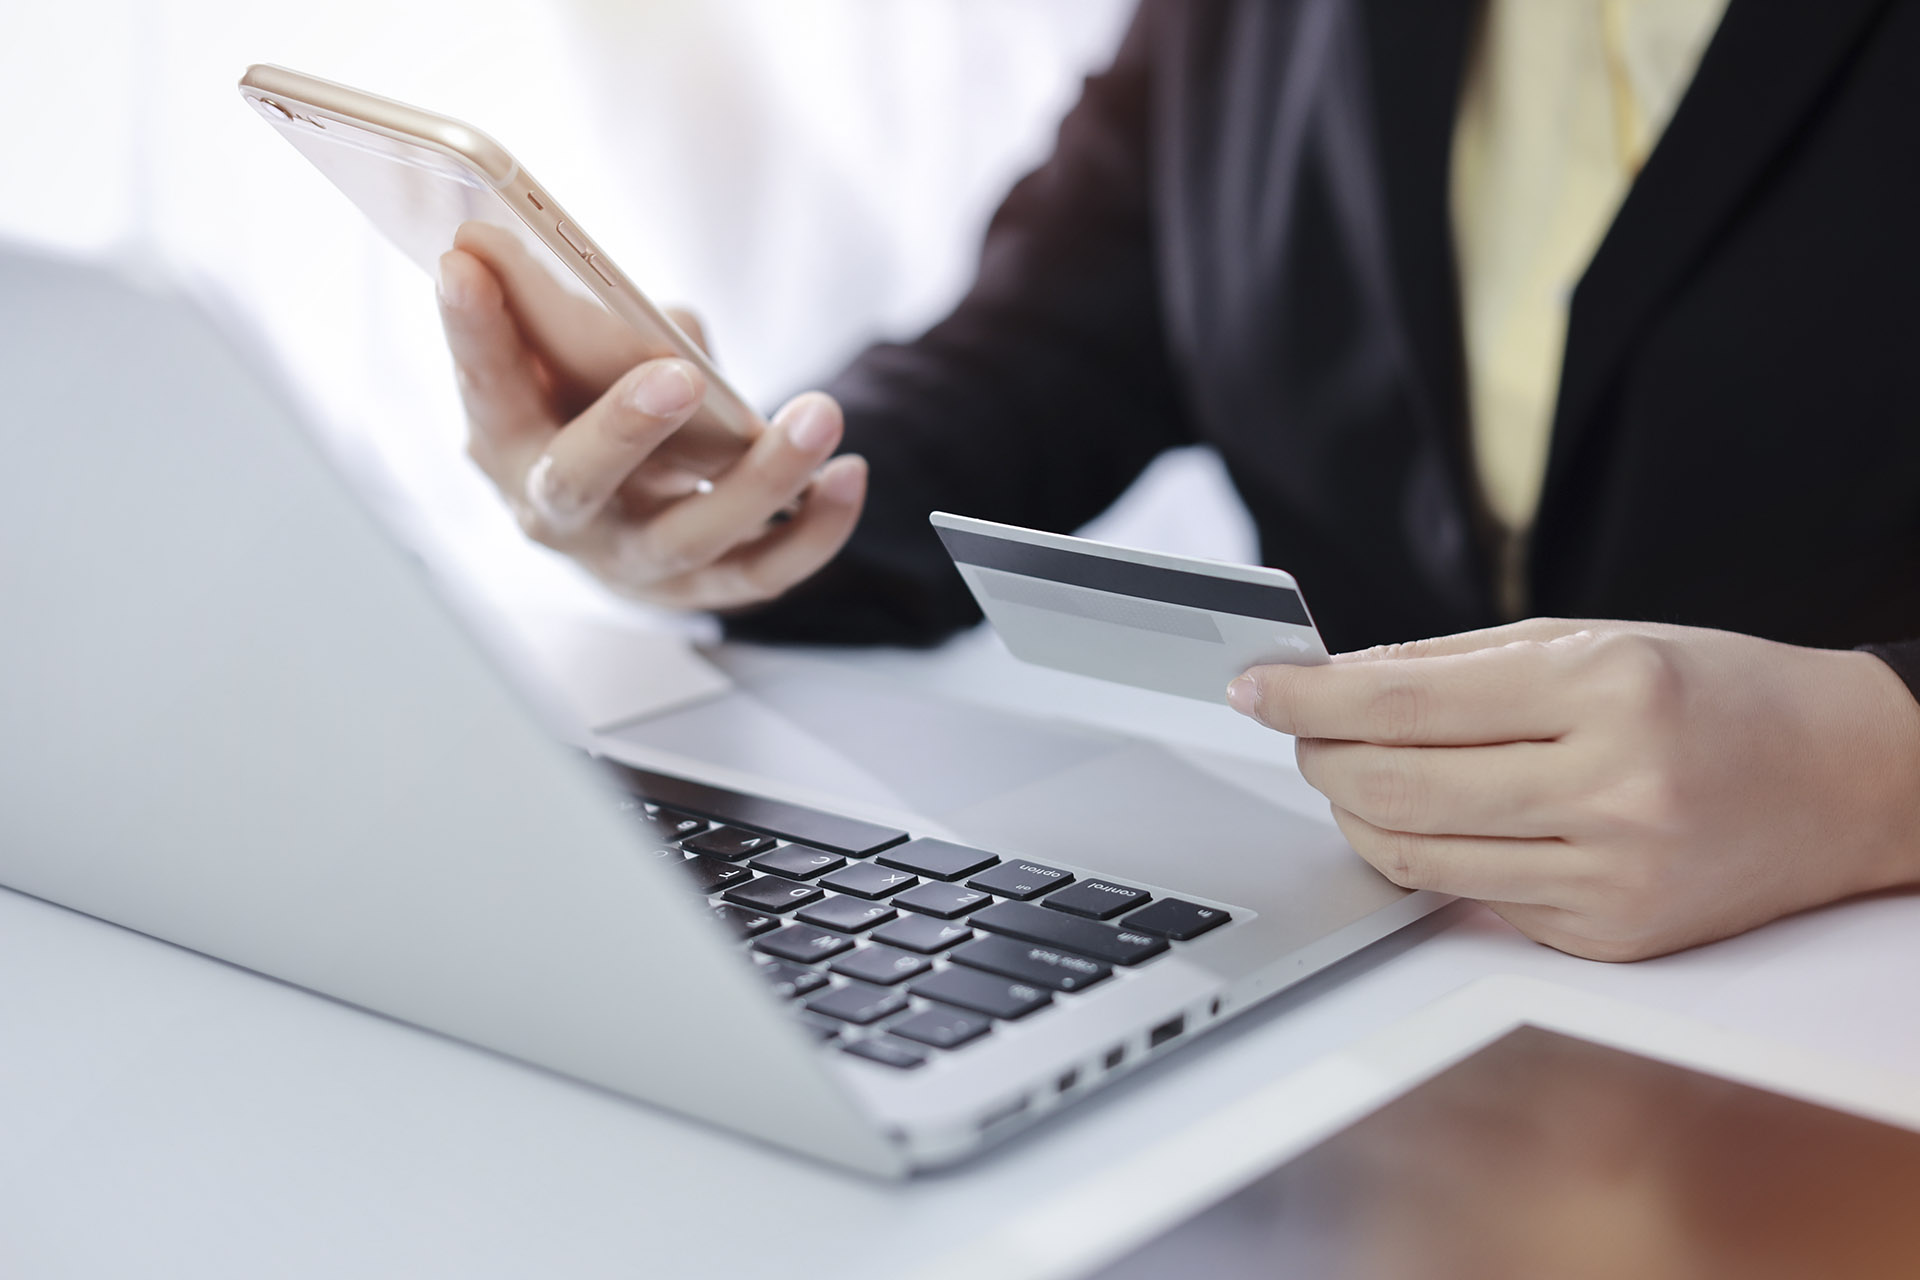 Csökkent a készpénzfelvétel, nőtt az online fizetés aránya a harmadik hullám alatt